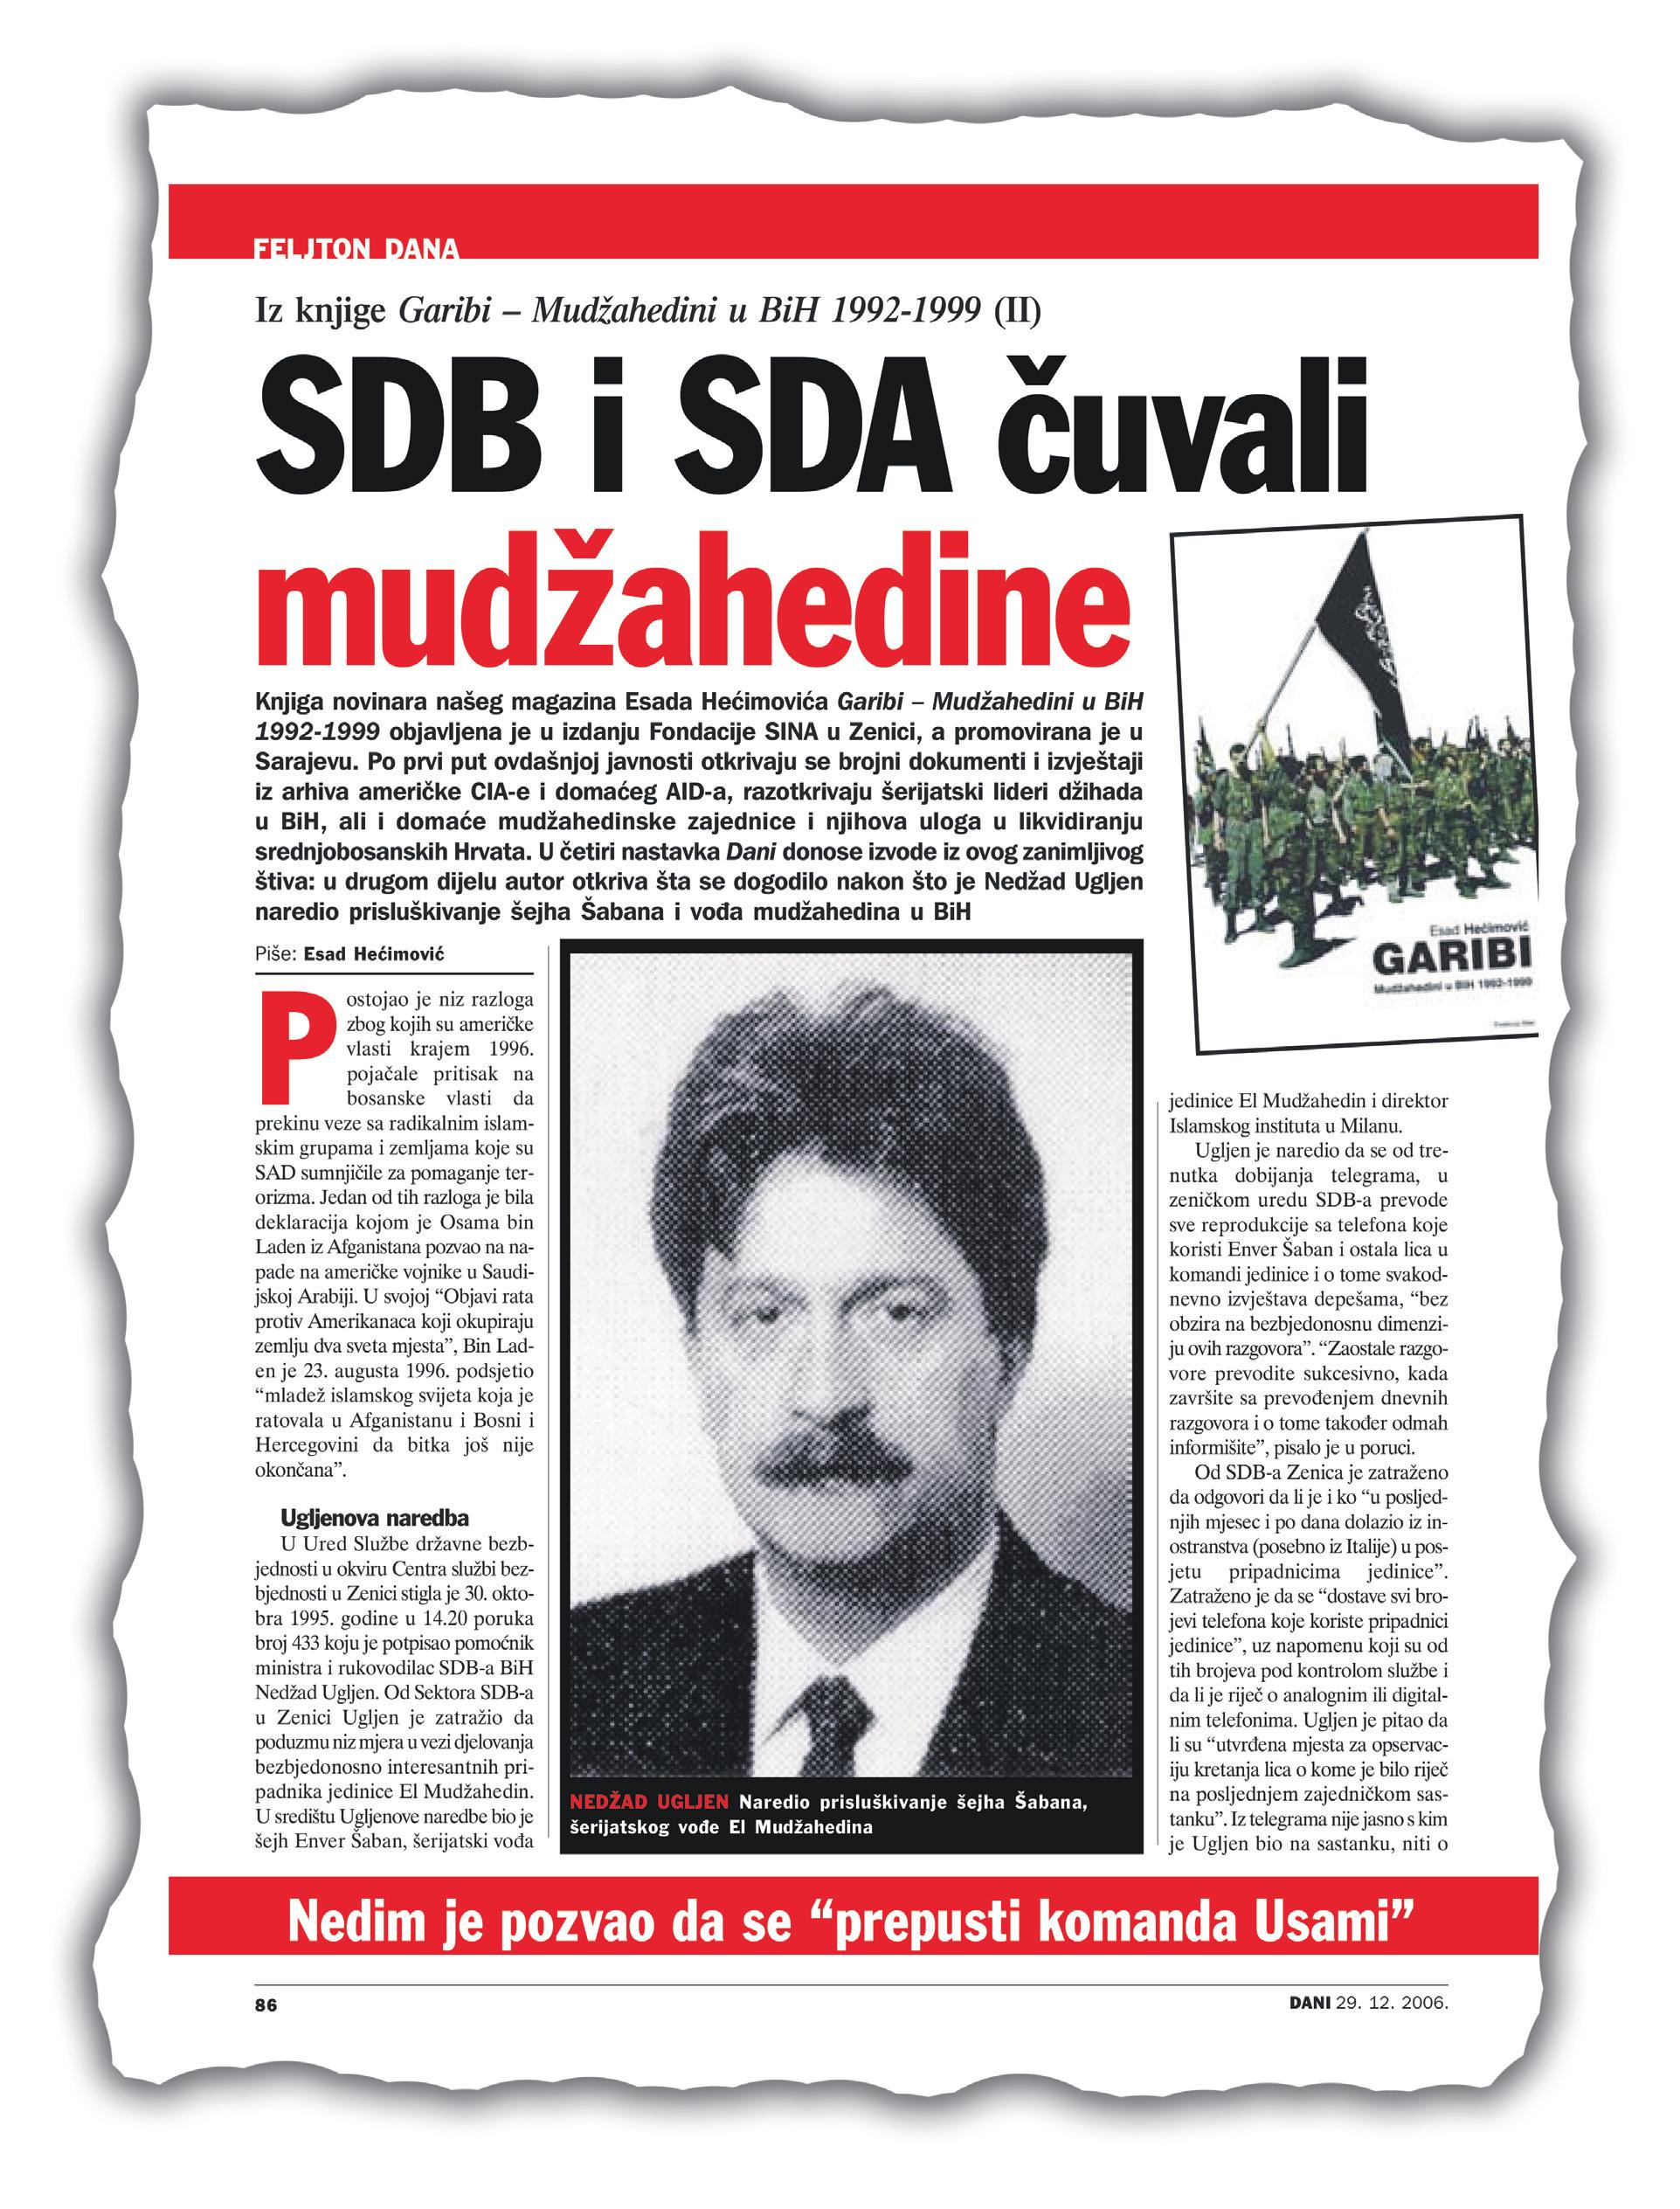 Faksimil feljtona objavljenog u “Danima” pod naslovom “SDB i SDA čuvali mudžahedine” - Avaz